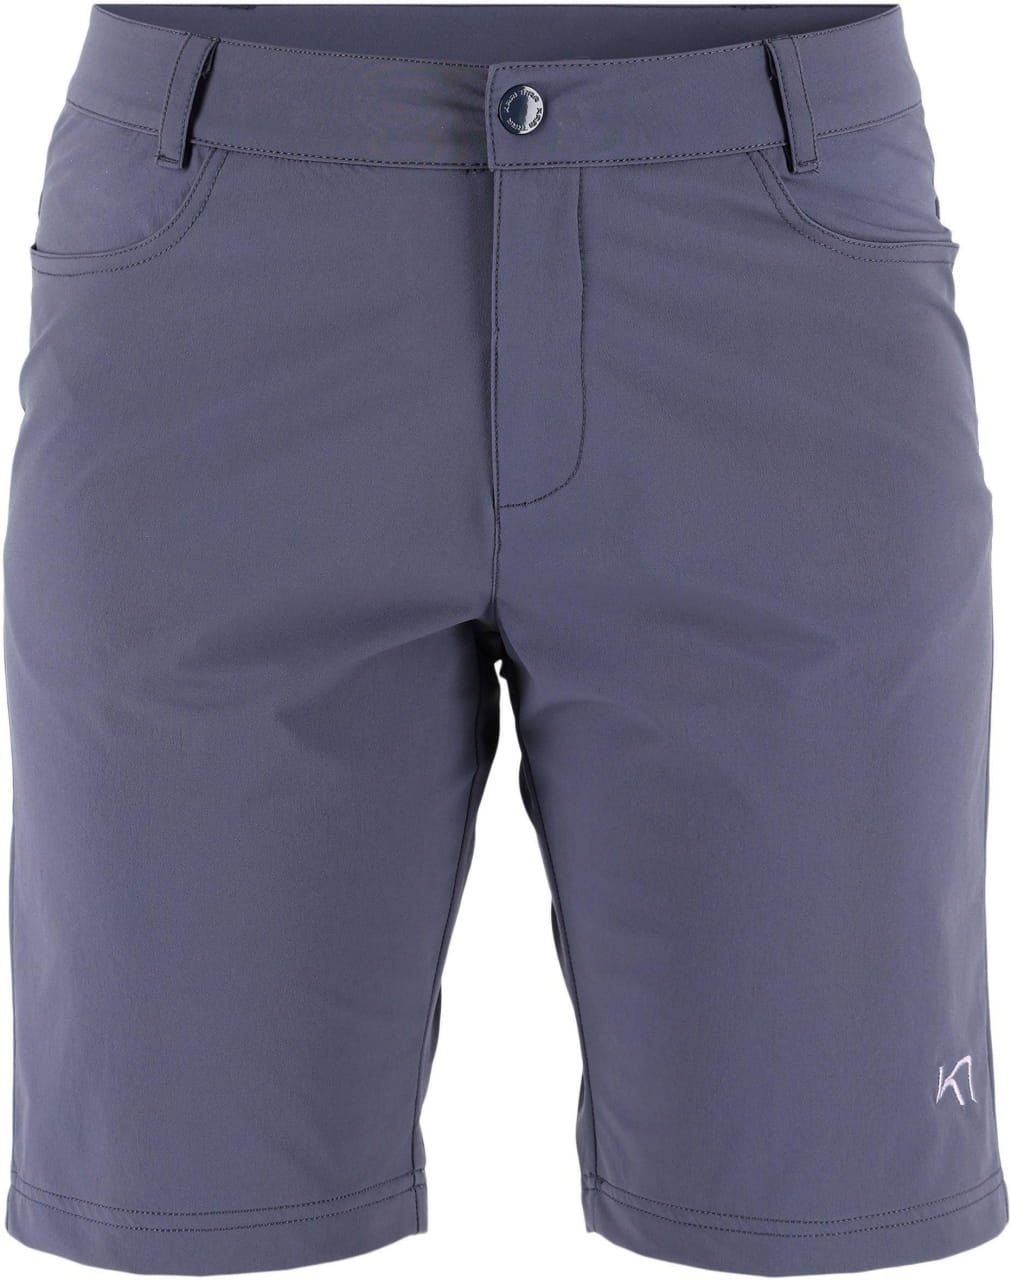 Pantalones cortos de exterior para mujer Kari Traa Thale Hiking Shorts